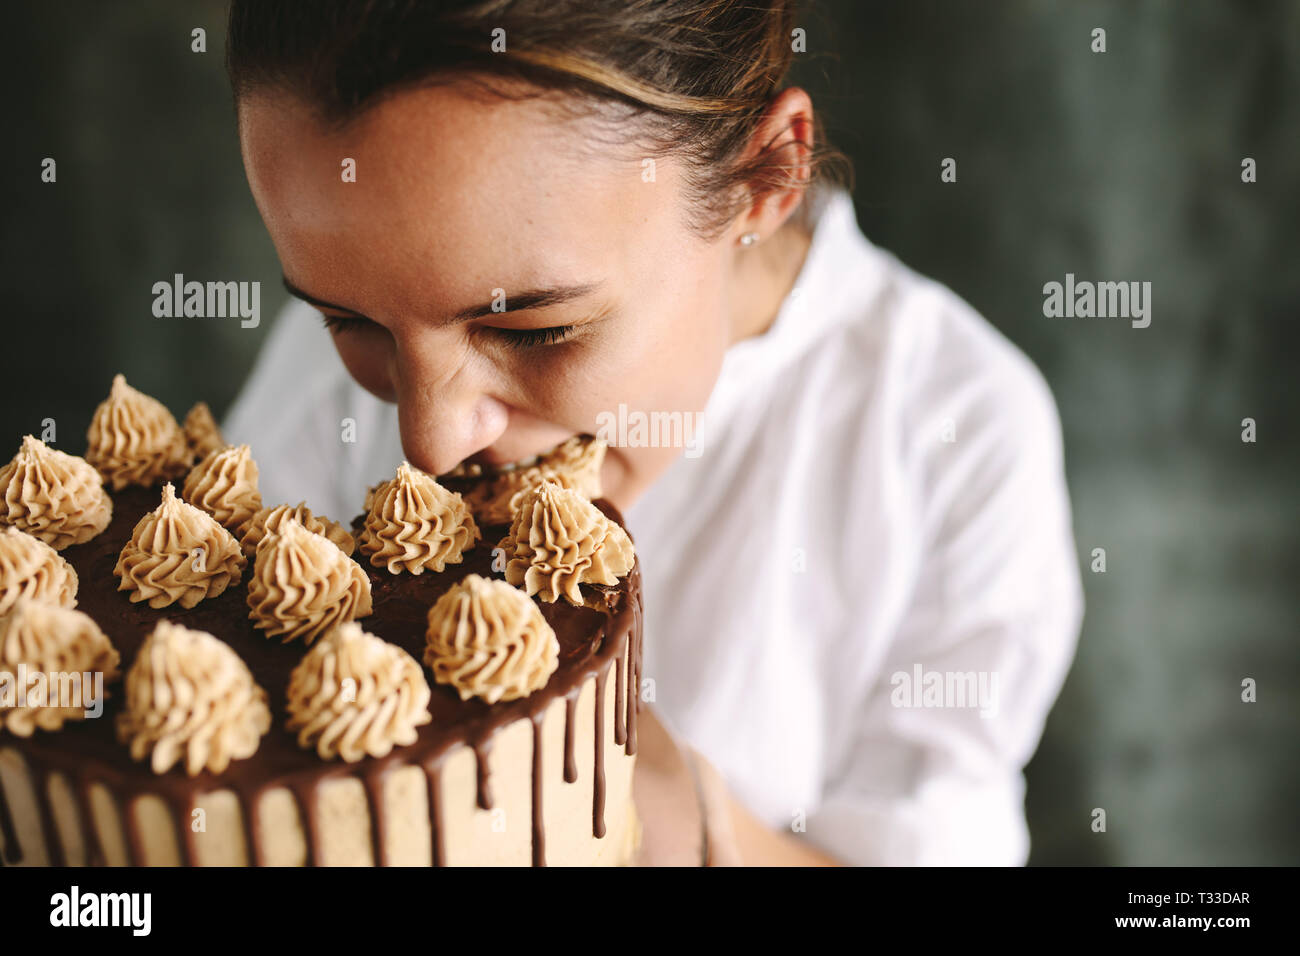 Weibliche Konditor einen großen Bissen von einem Kuchen. Konditor Essen der ganzen Kuchen. Stockfoto